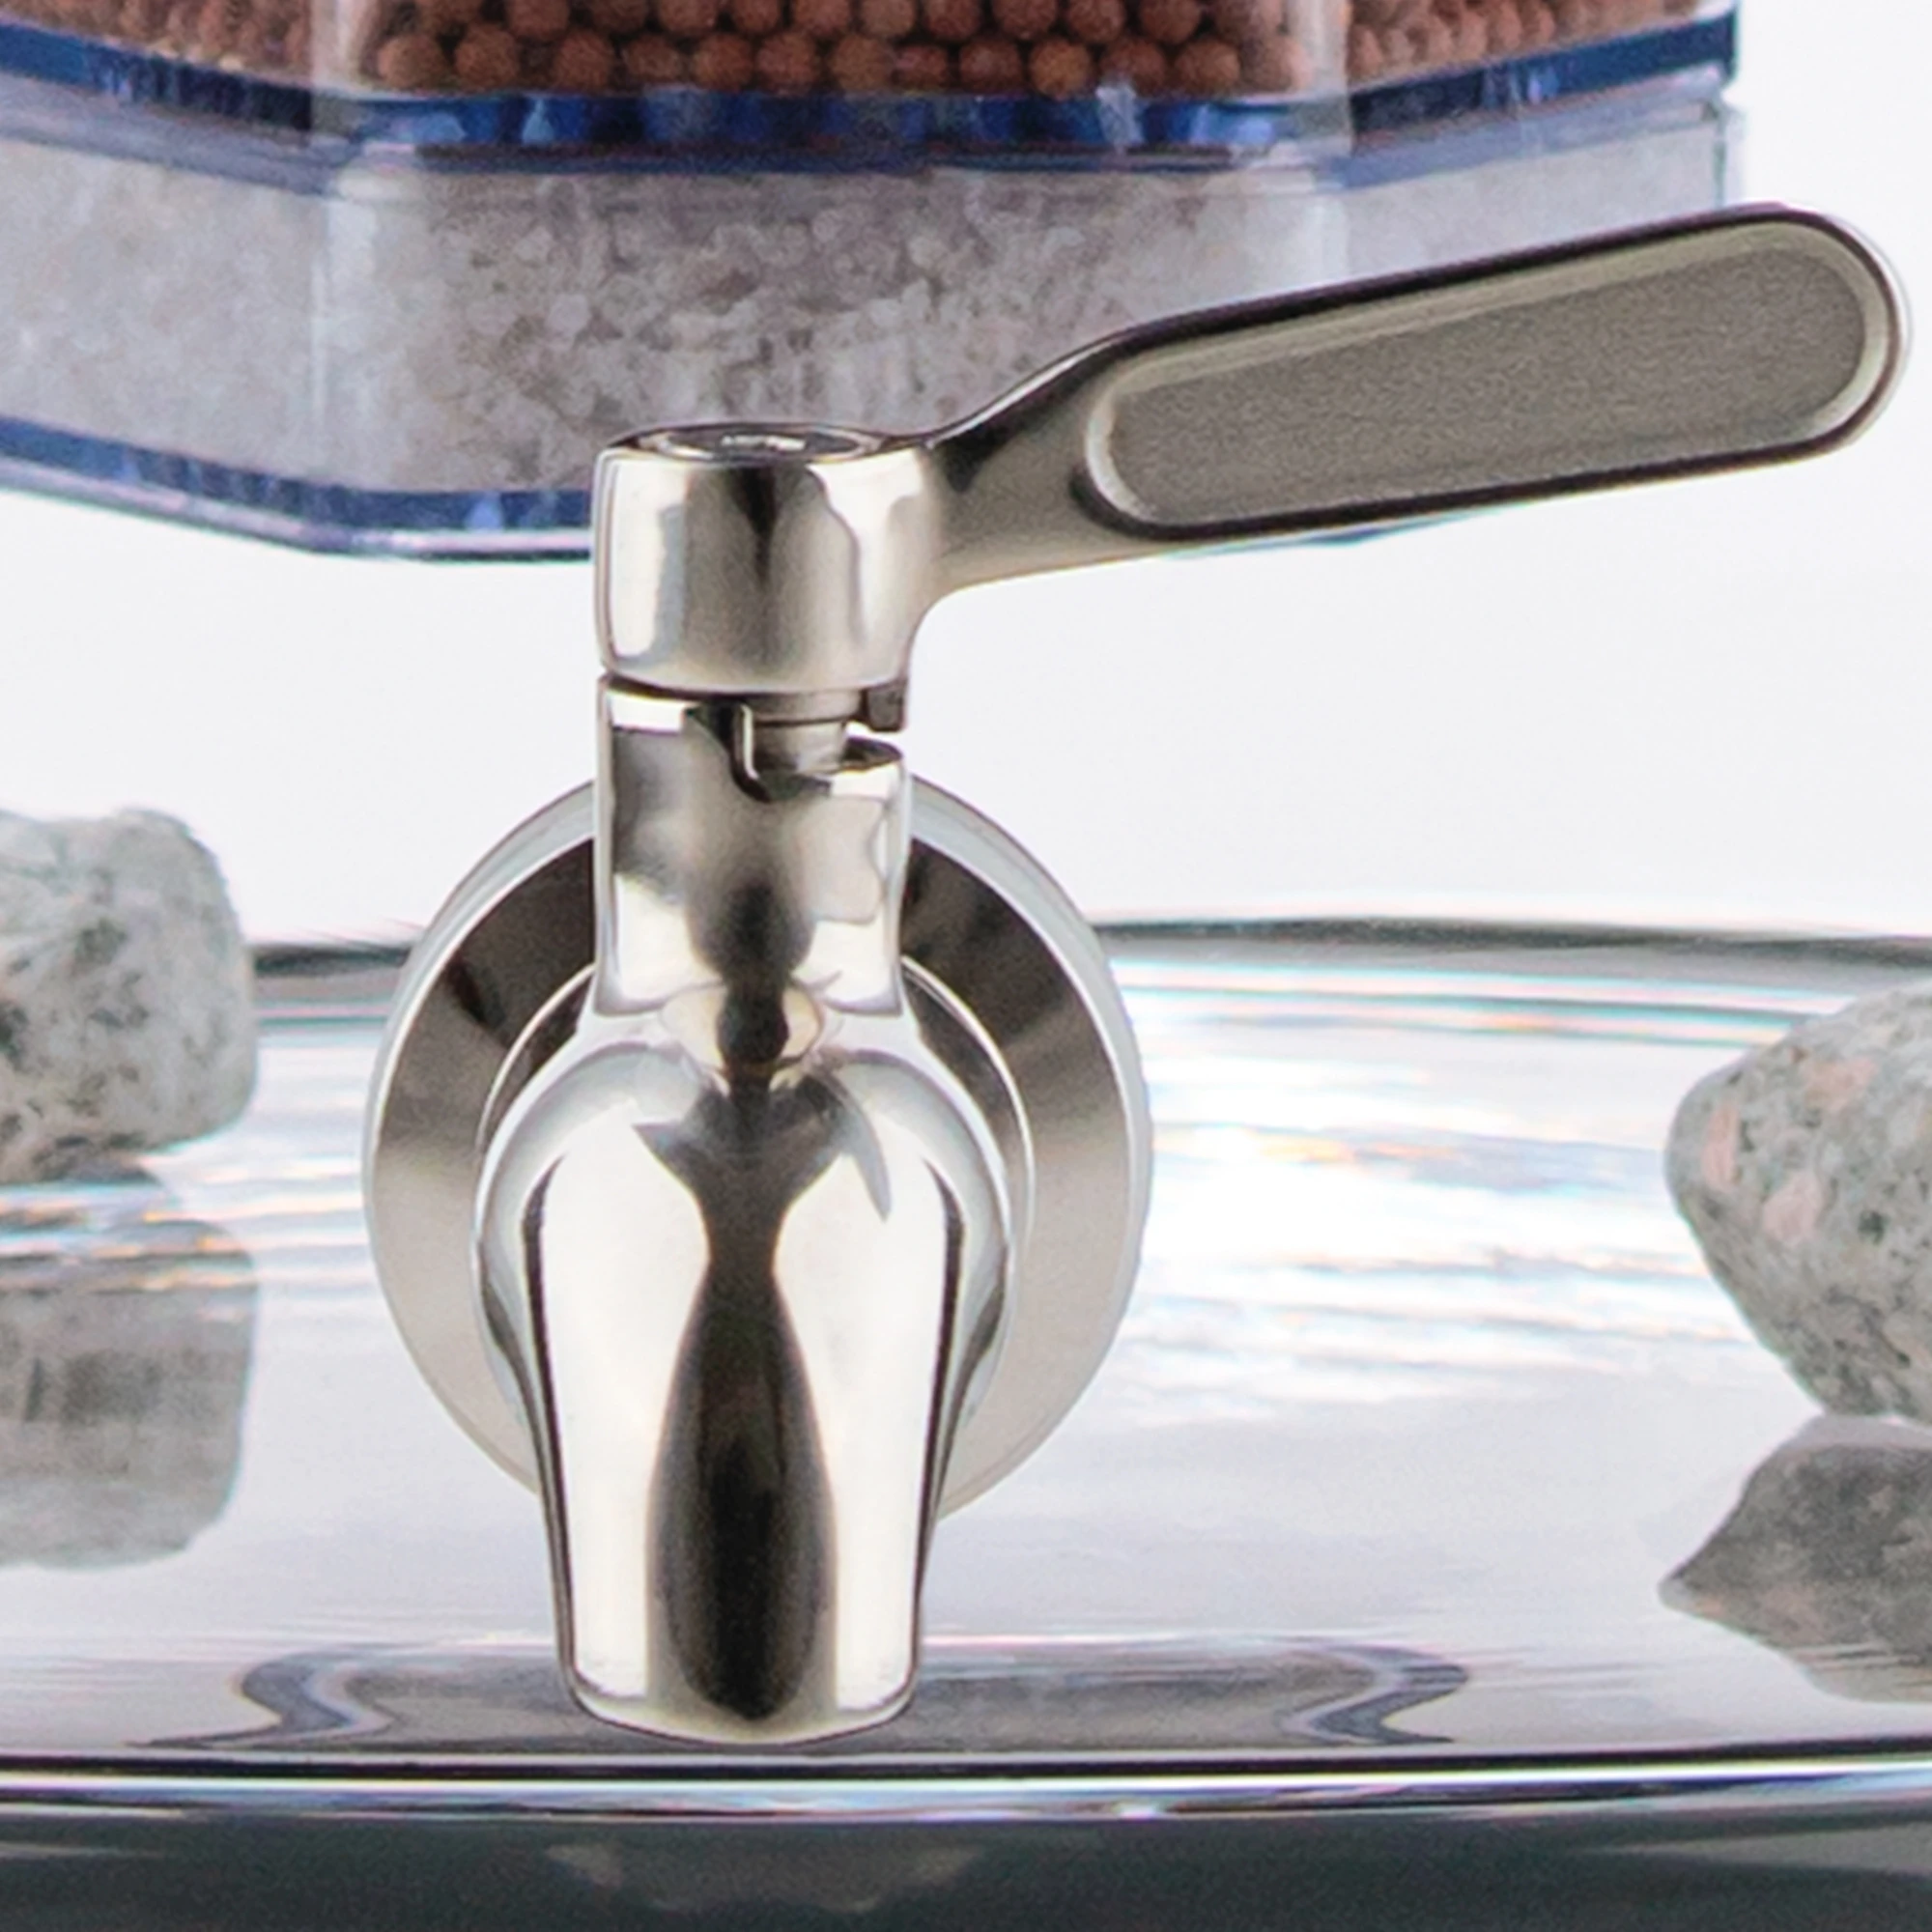 Zu sehen ist der Edelstahl Wasserhahn Yakawa für Standfilter an einem Glastank in kristallklar montiert. Der Hahn ist silber und hat einen relativ großen Hebel zum öffnen, dieser ist zur Seite gedreht. 